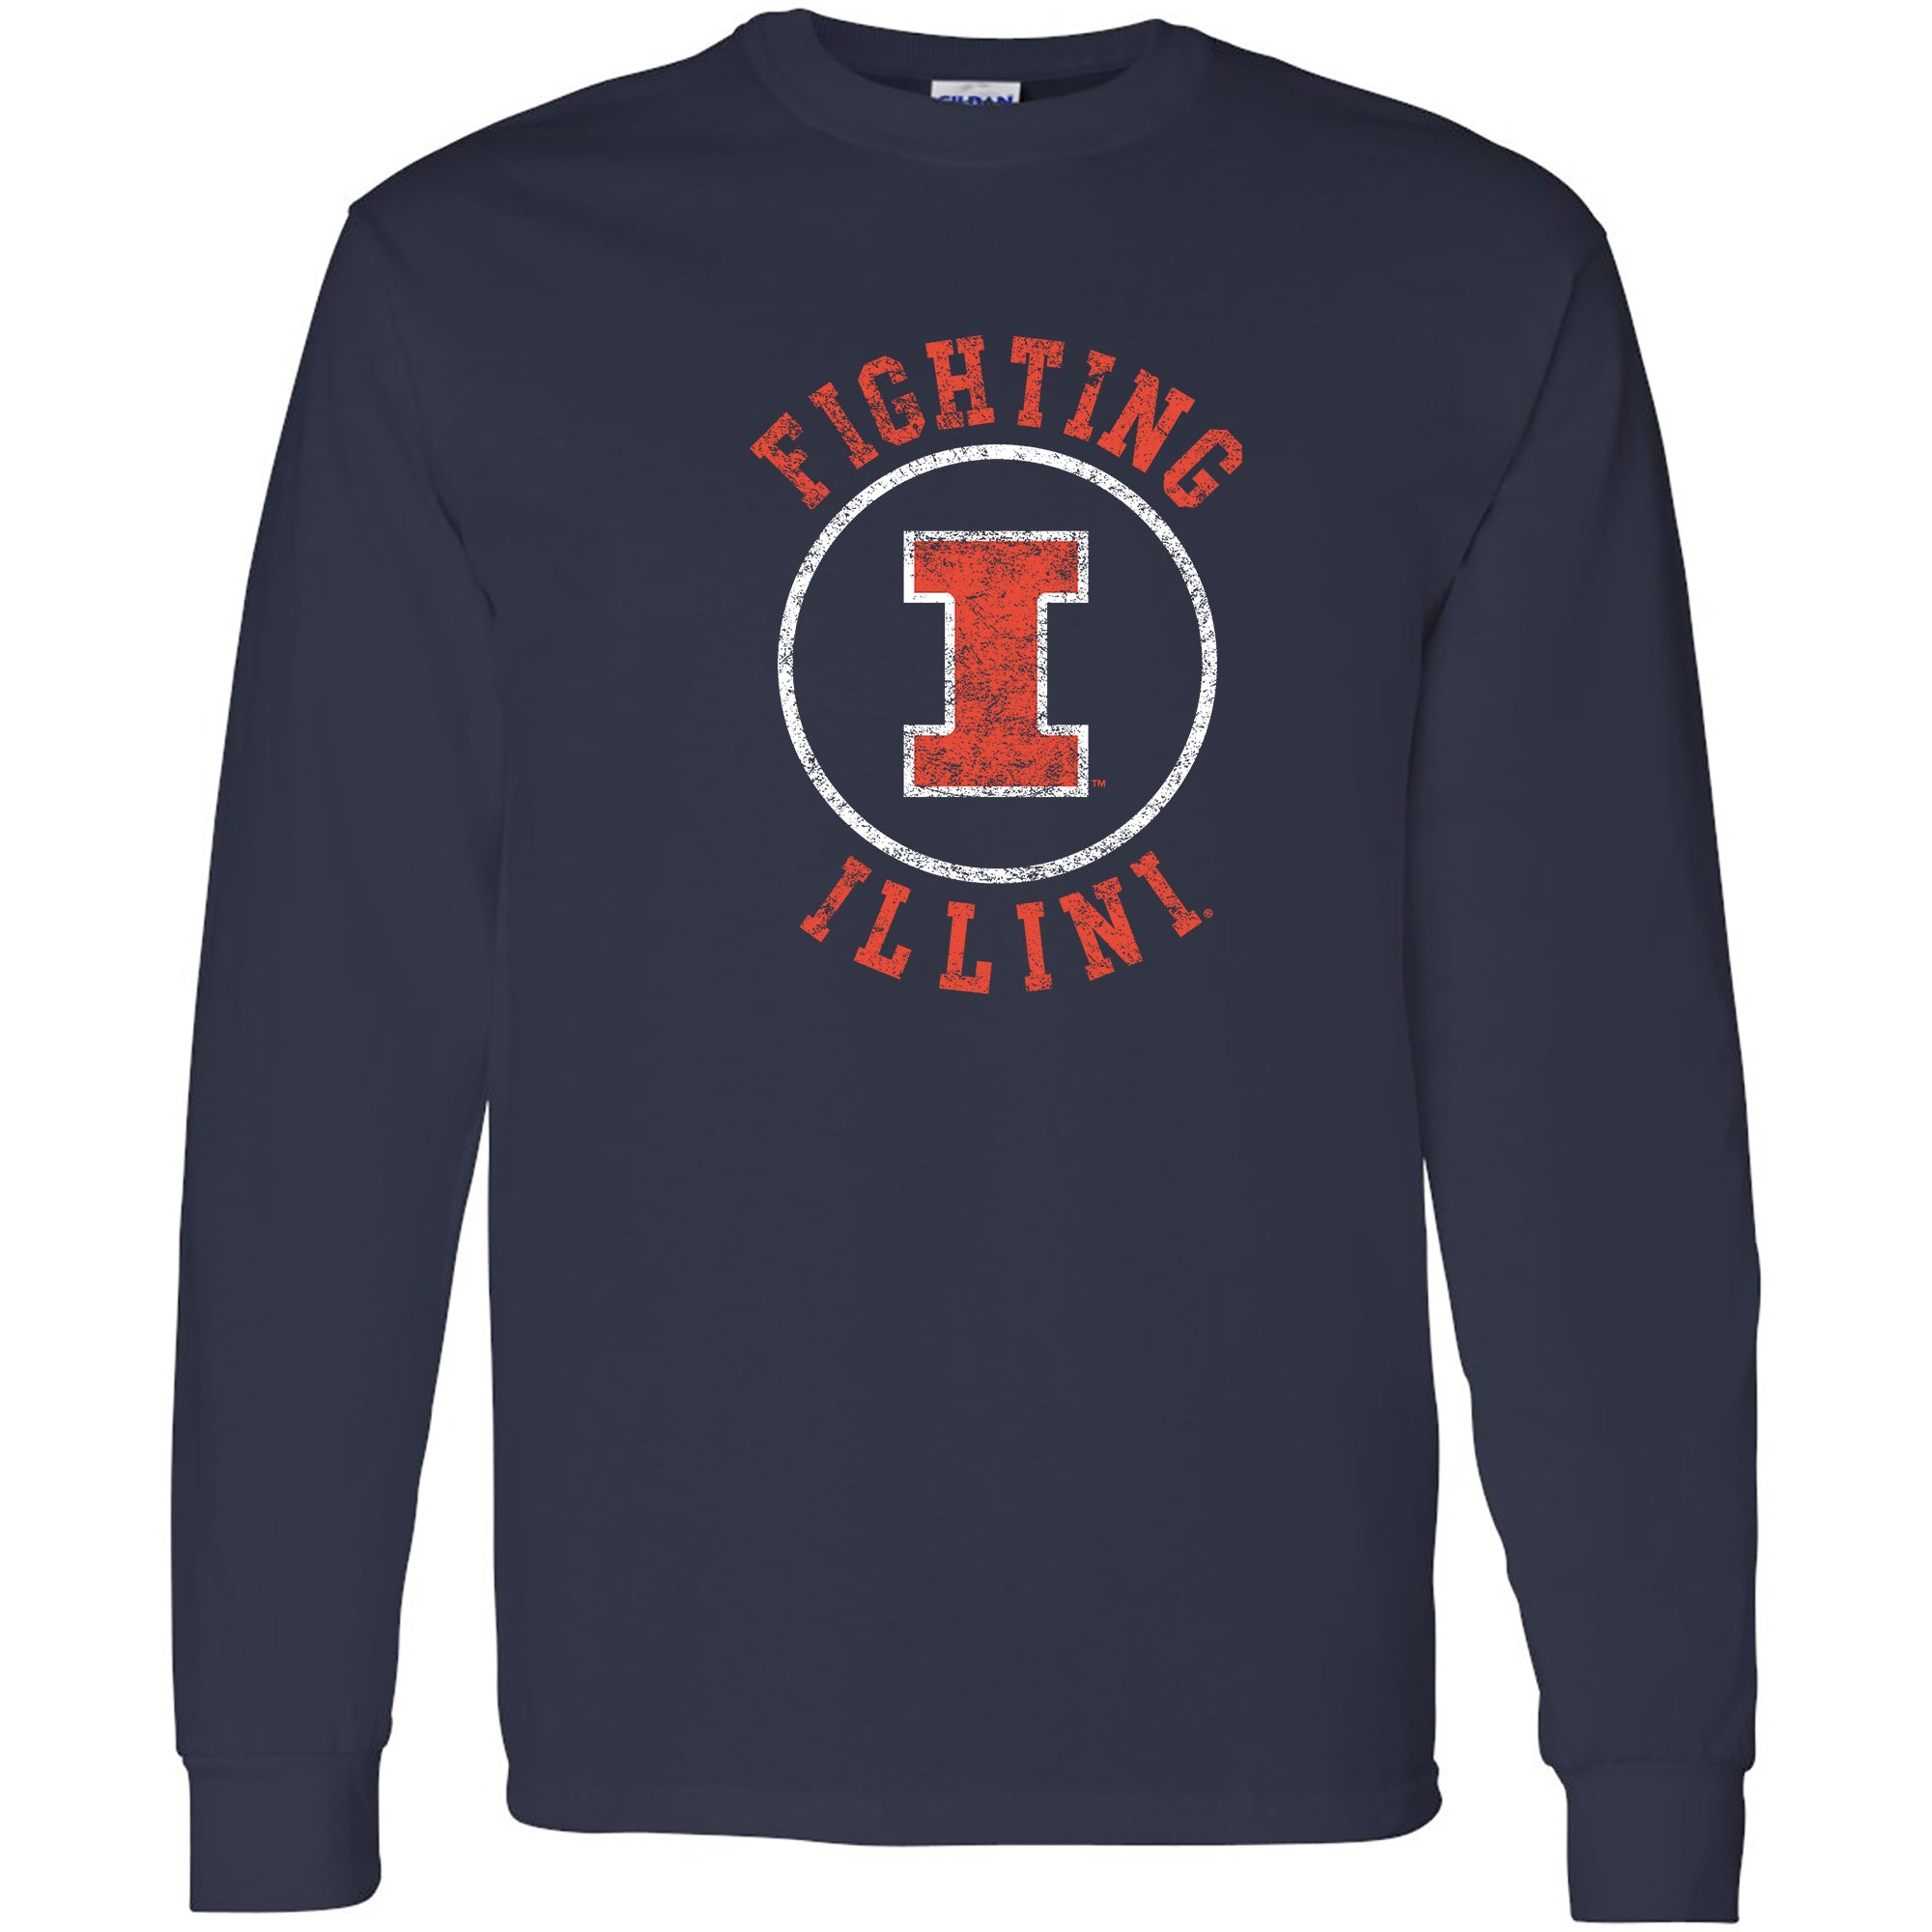 University of Illinois Chicago Short Sleeve T-Shirt: University of